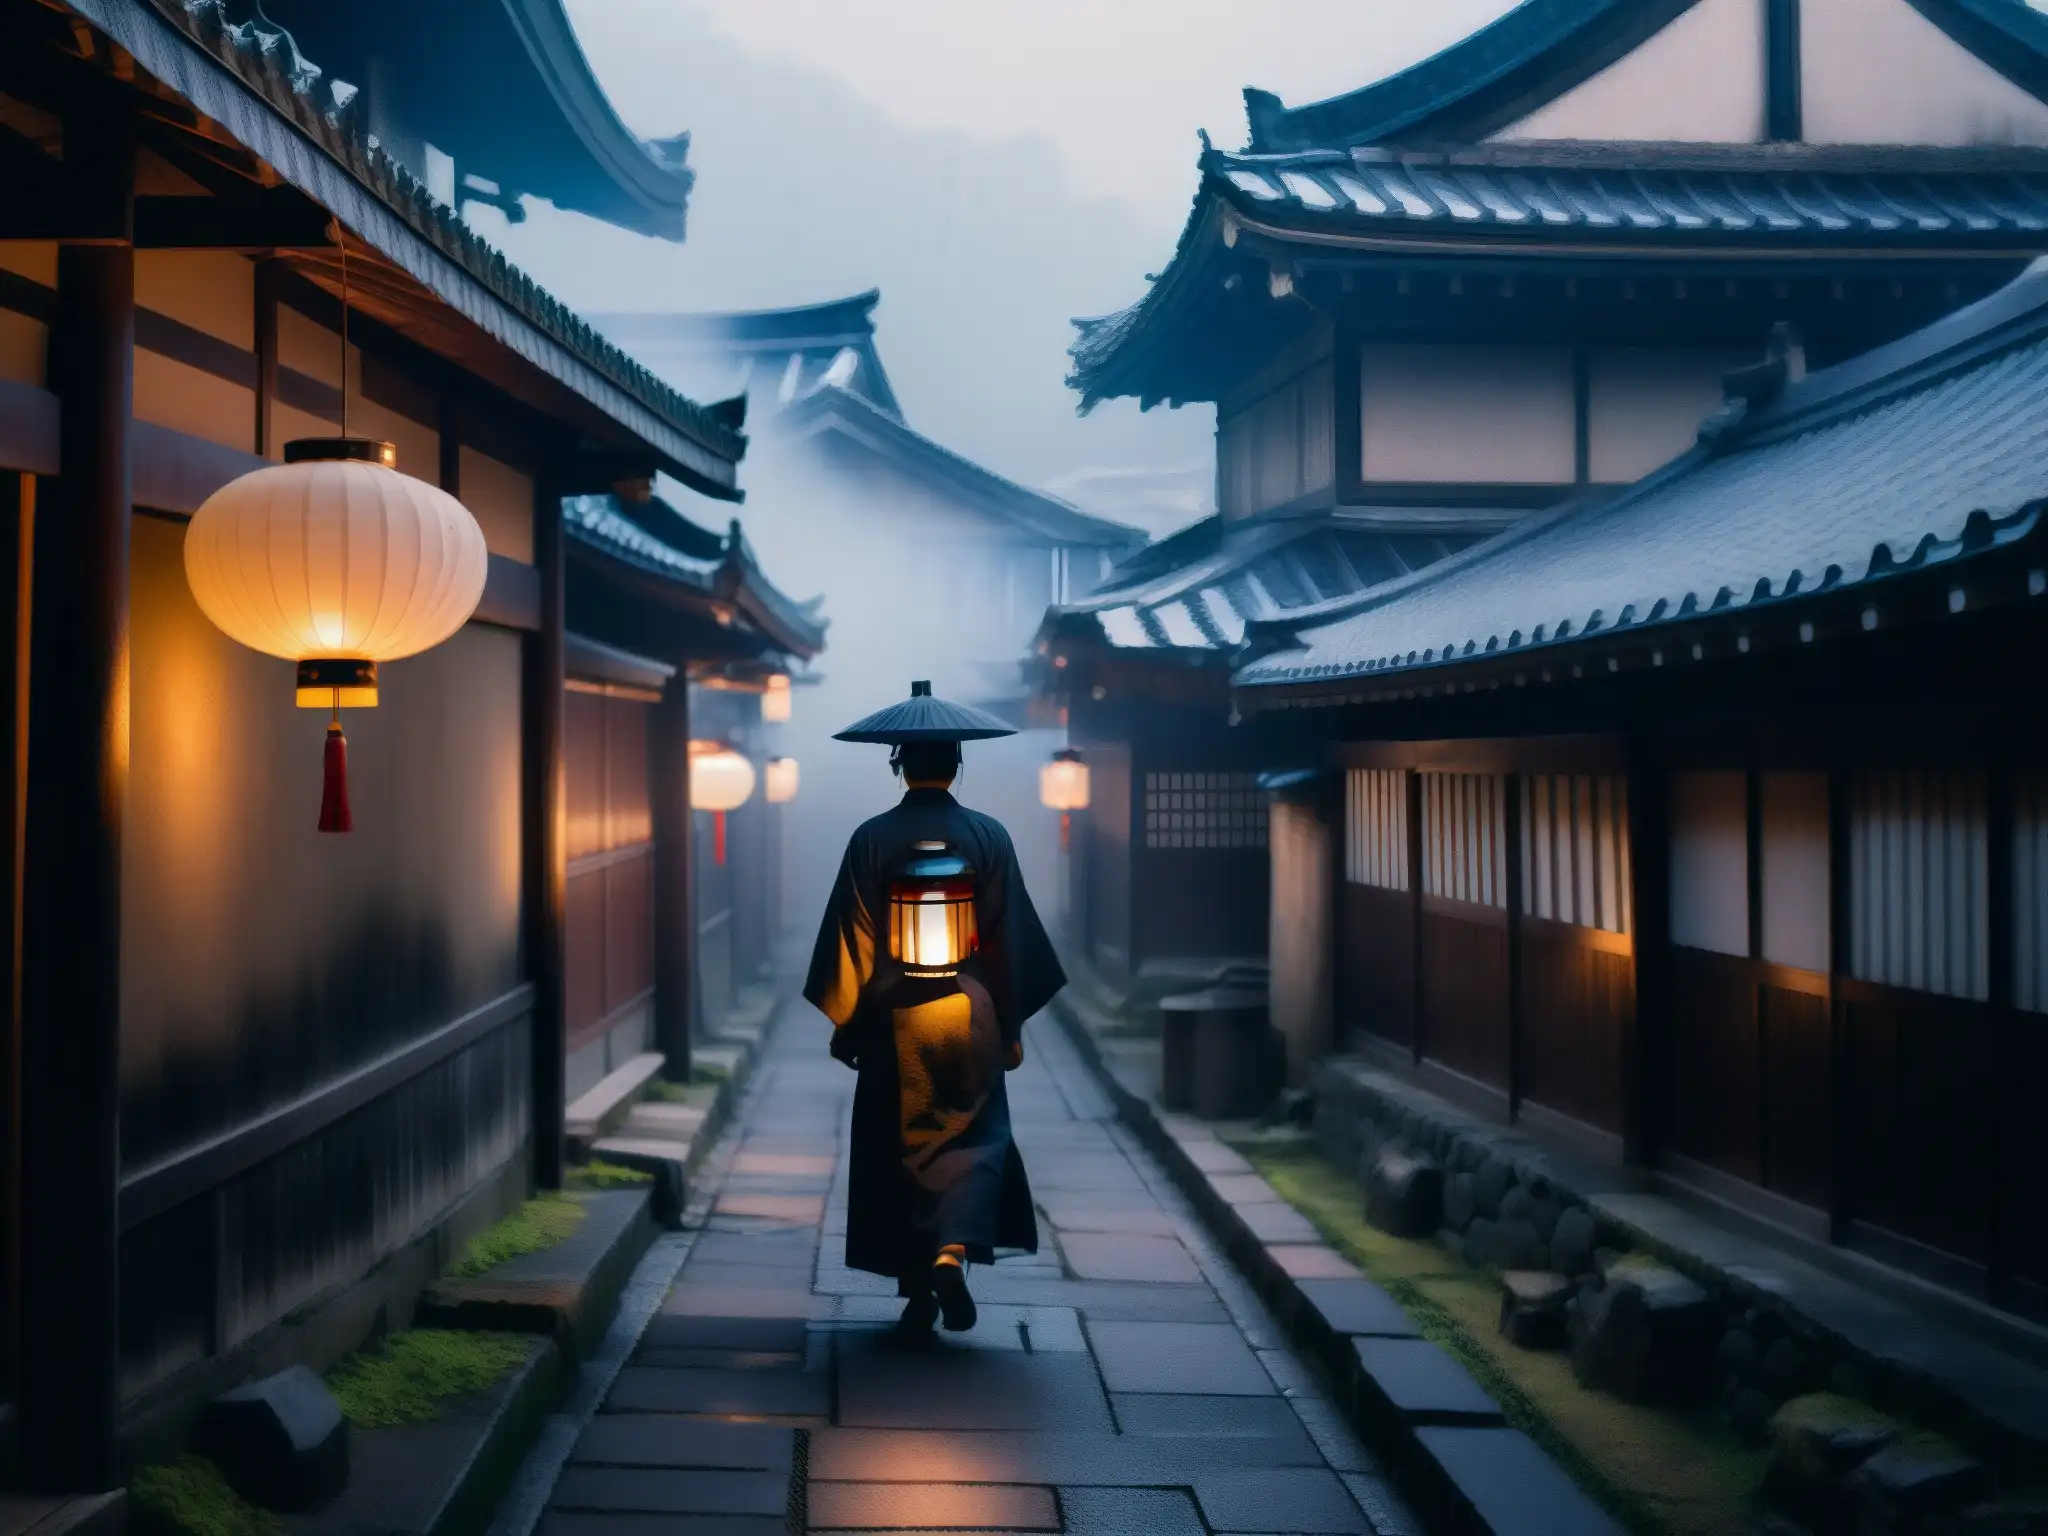 Un solitario personaje con linterna en un callejón japonés, rodeado de niebla y sombras, evocando leyendas urbanas fantasmas Japón